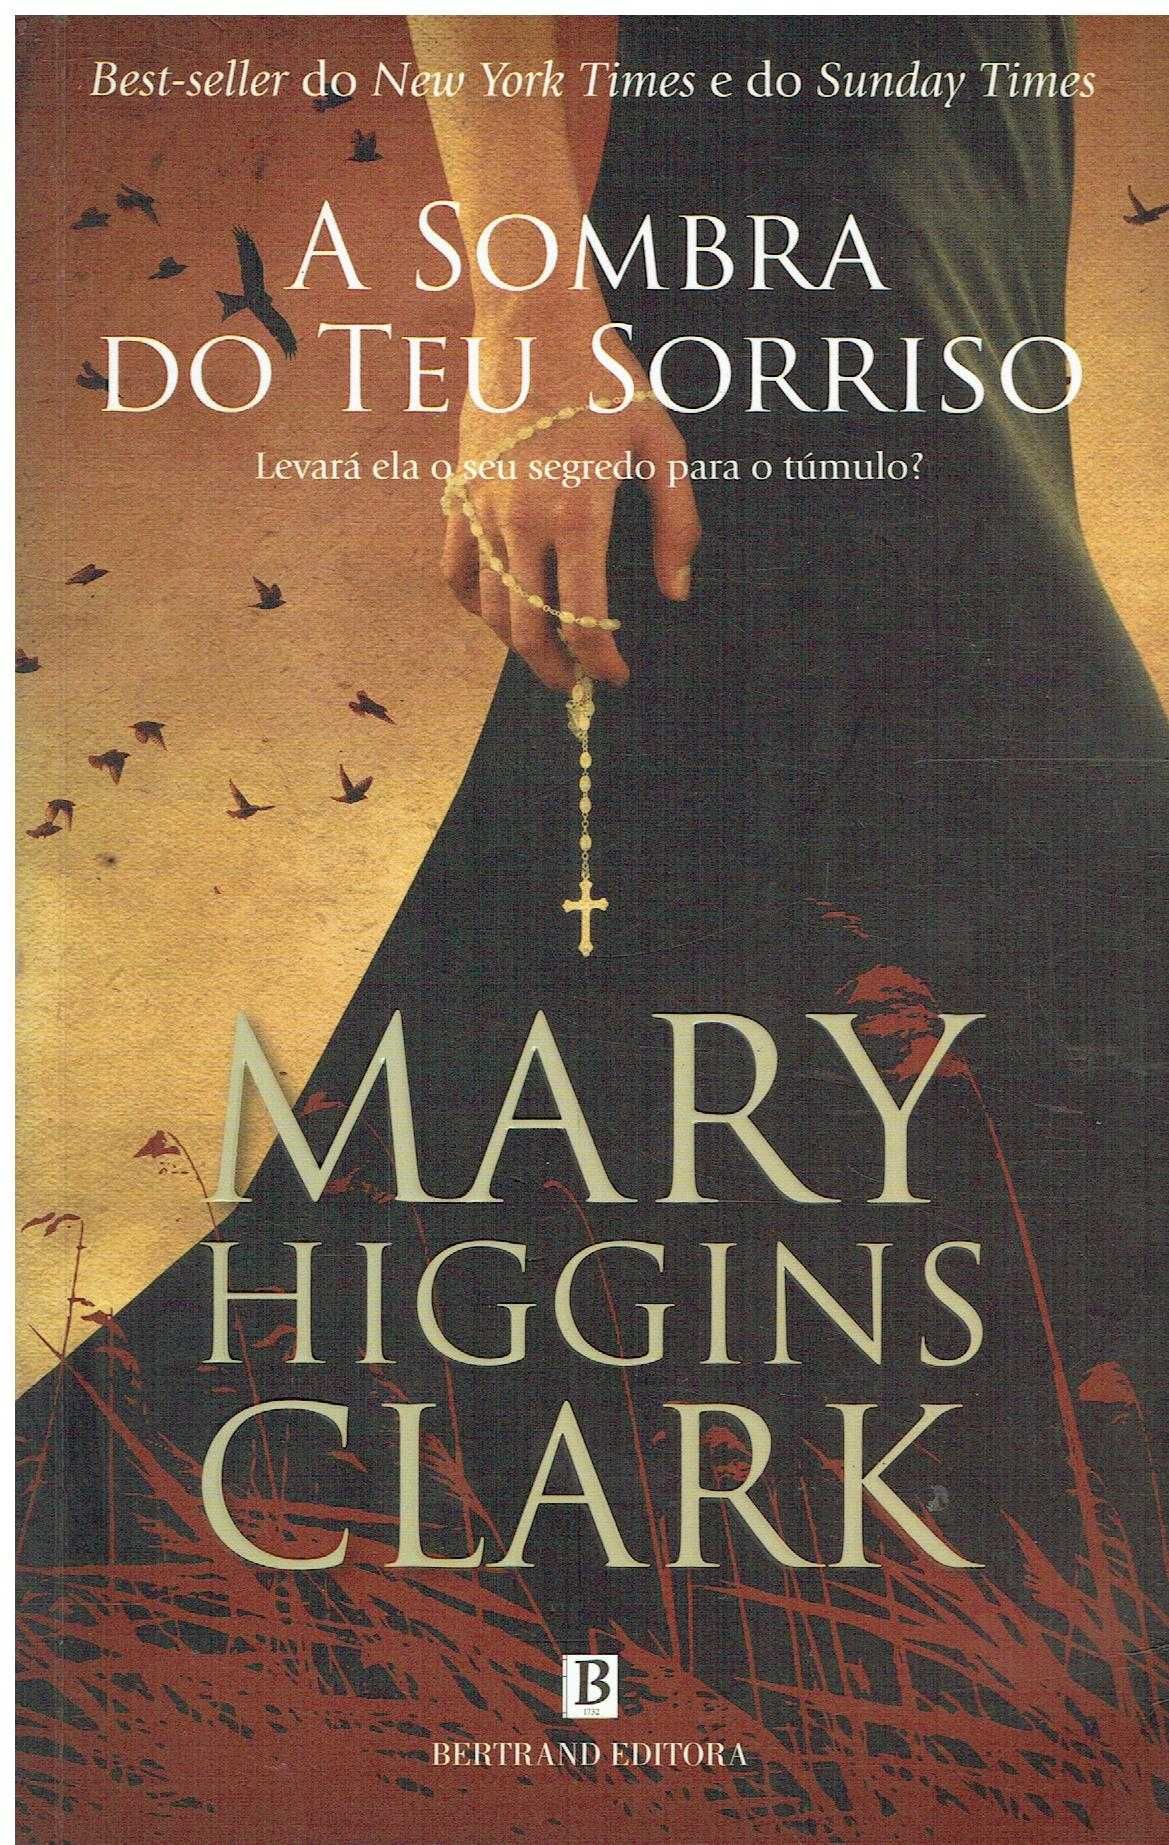 13039

A Sombra do Teu Sorriso
de Mary Higgins Clark